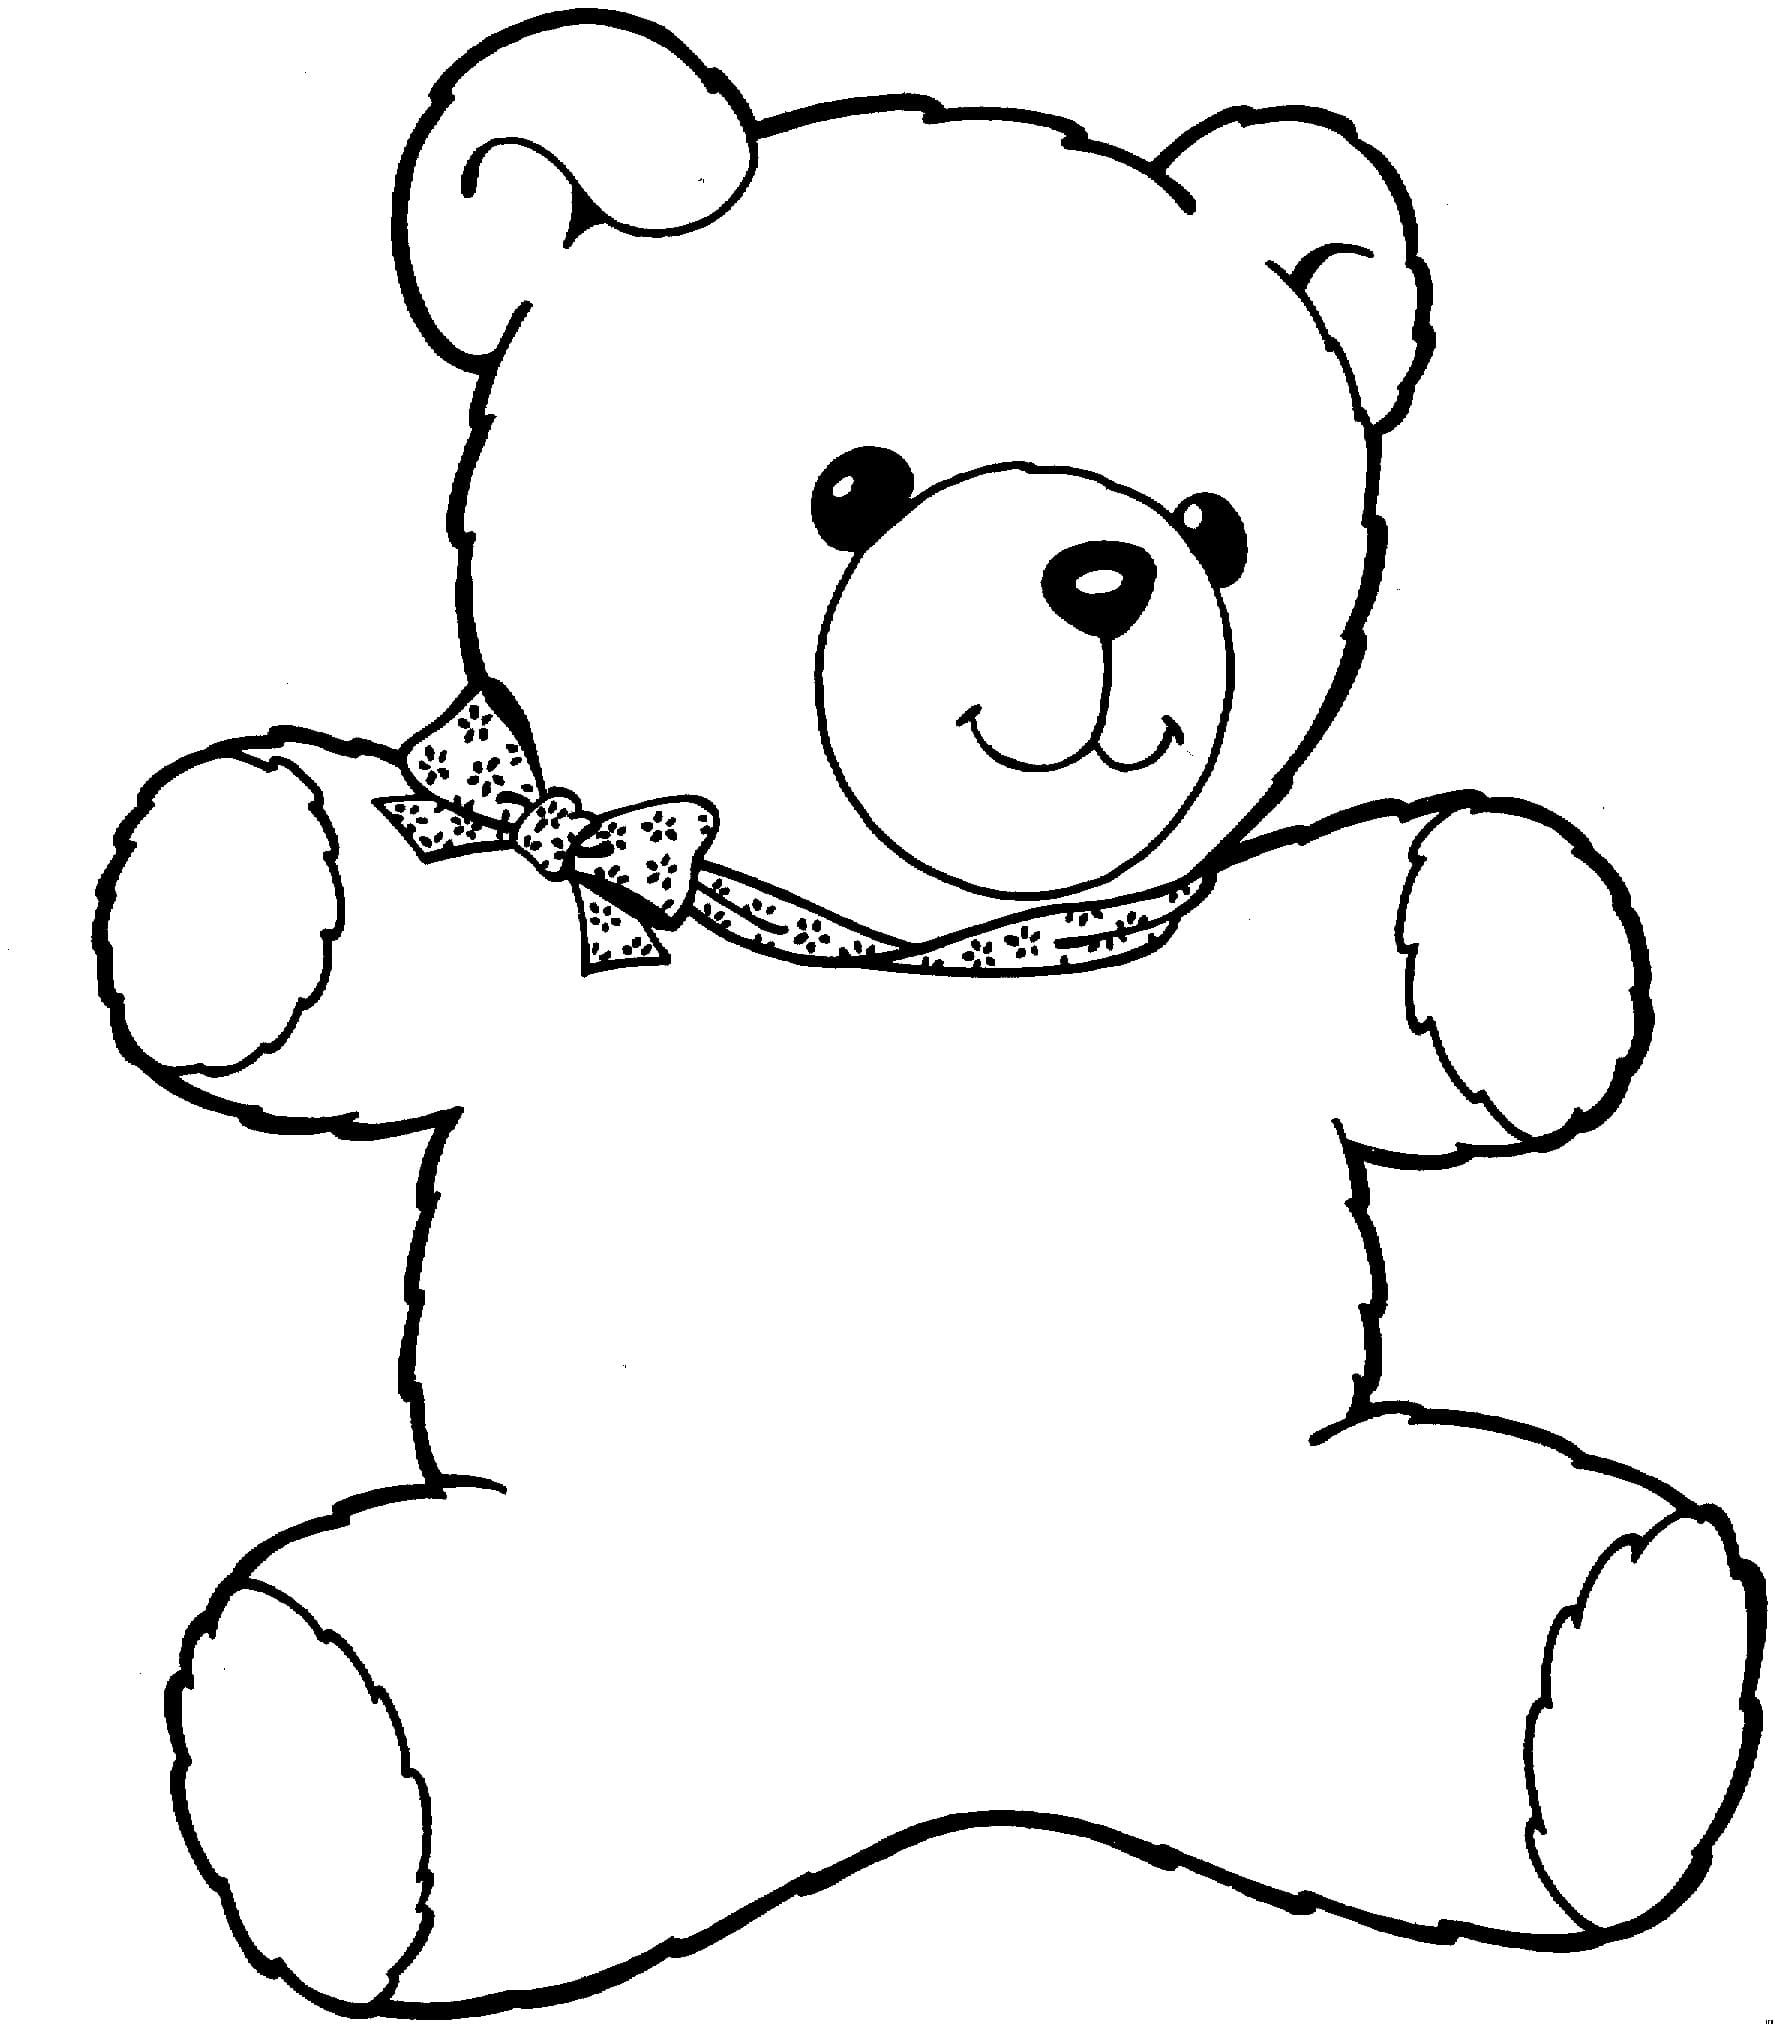 Рисунок игрушечного медведя